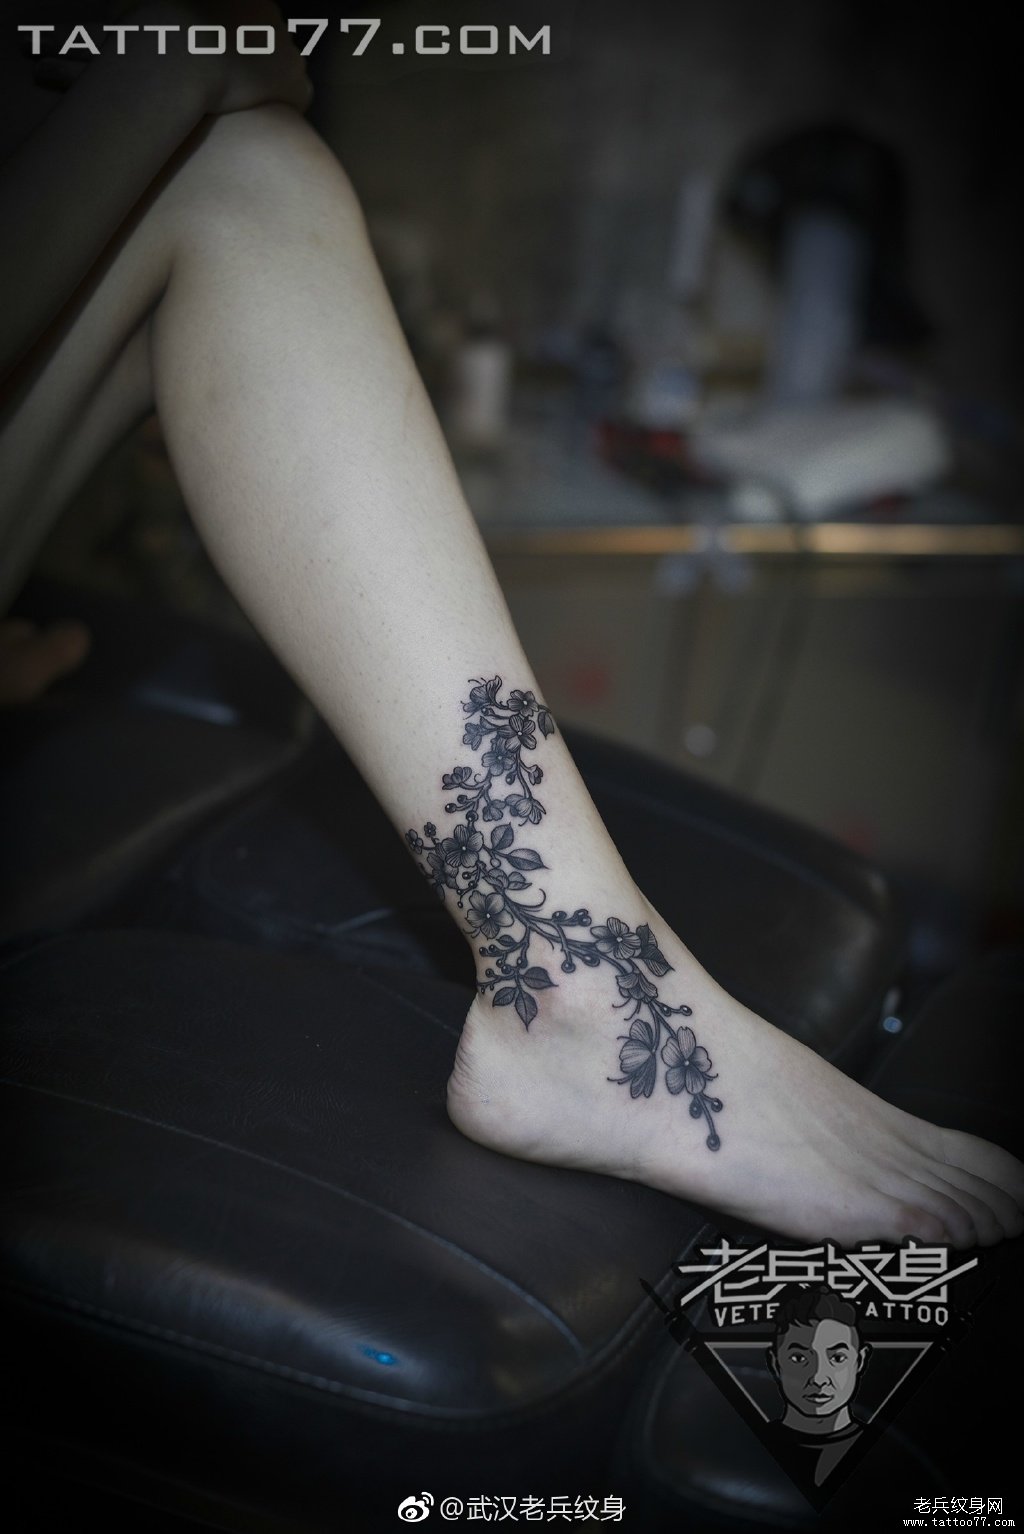 小腿黑灰藤蔓纹身图案 - 广州纹彩刺青